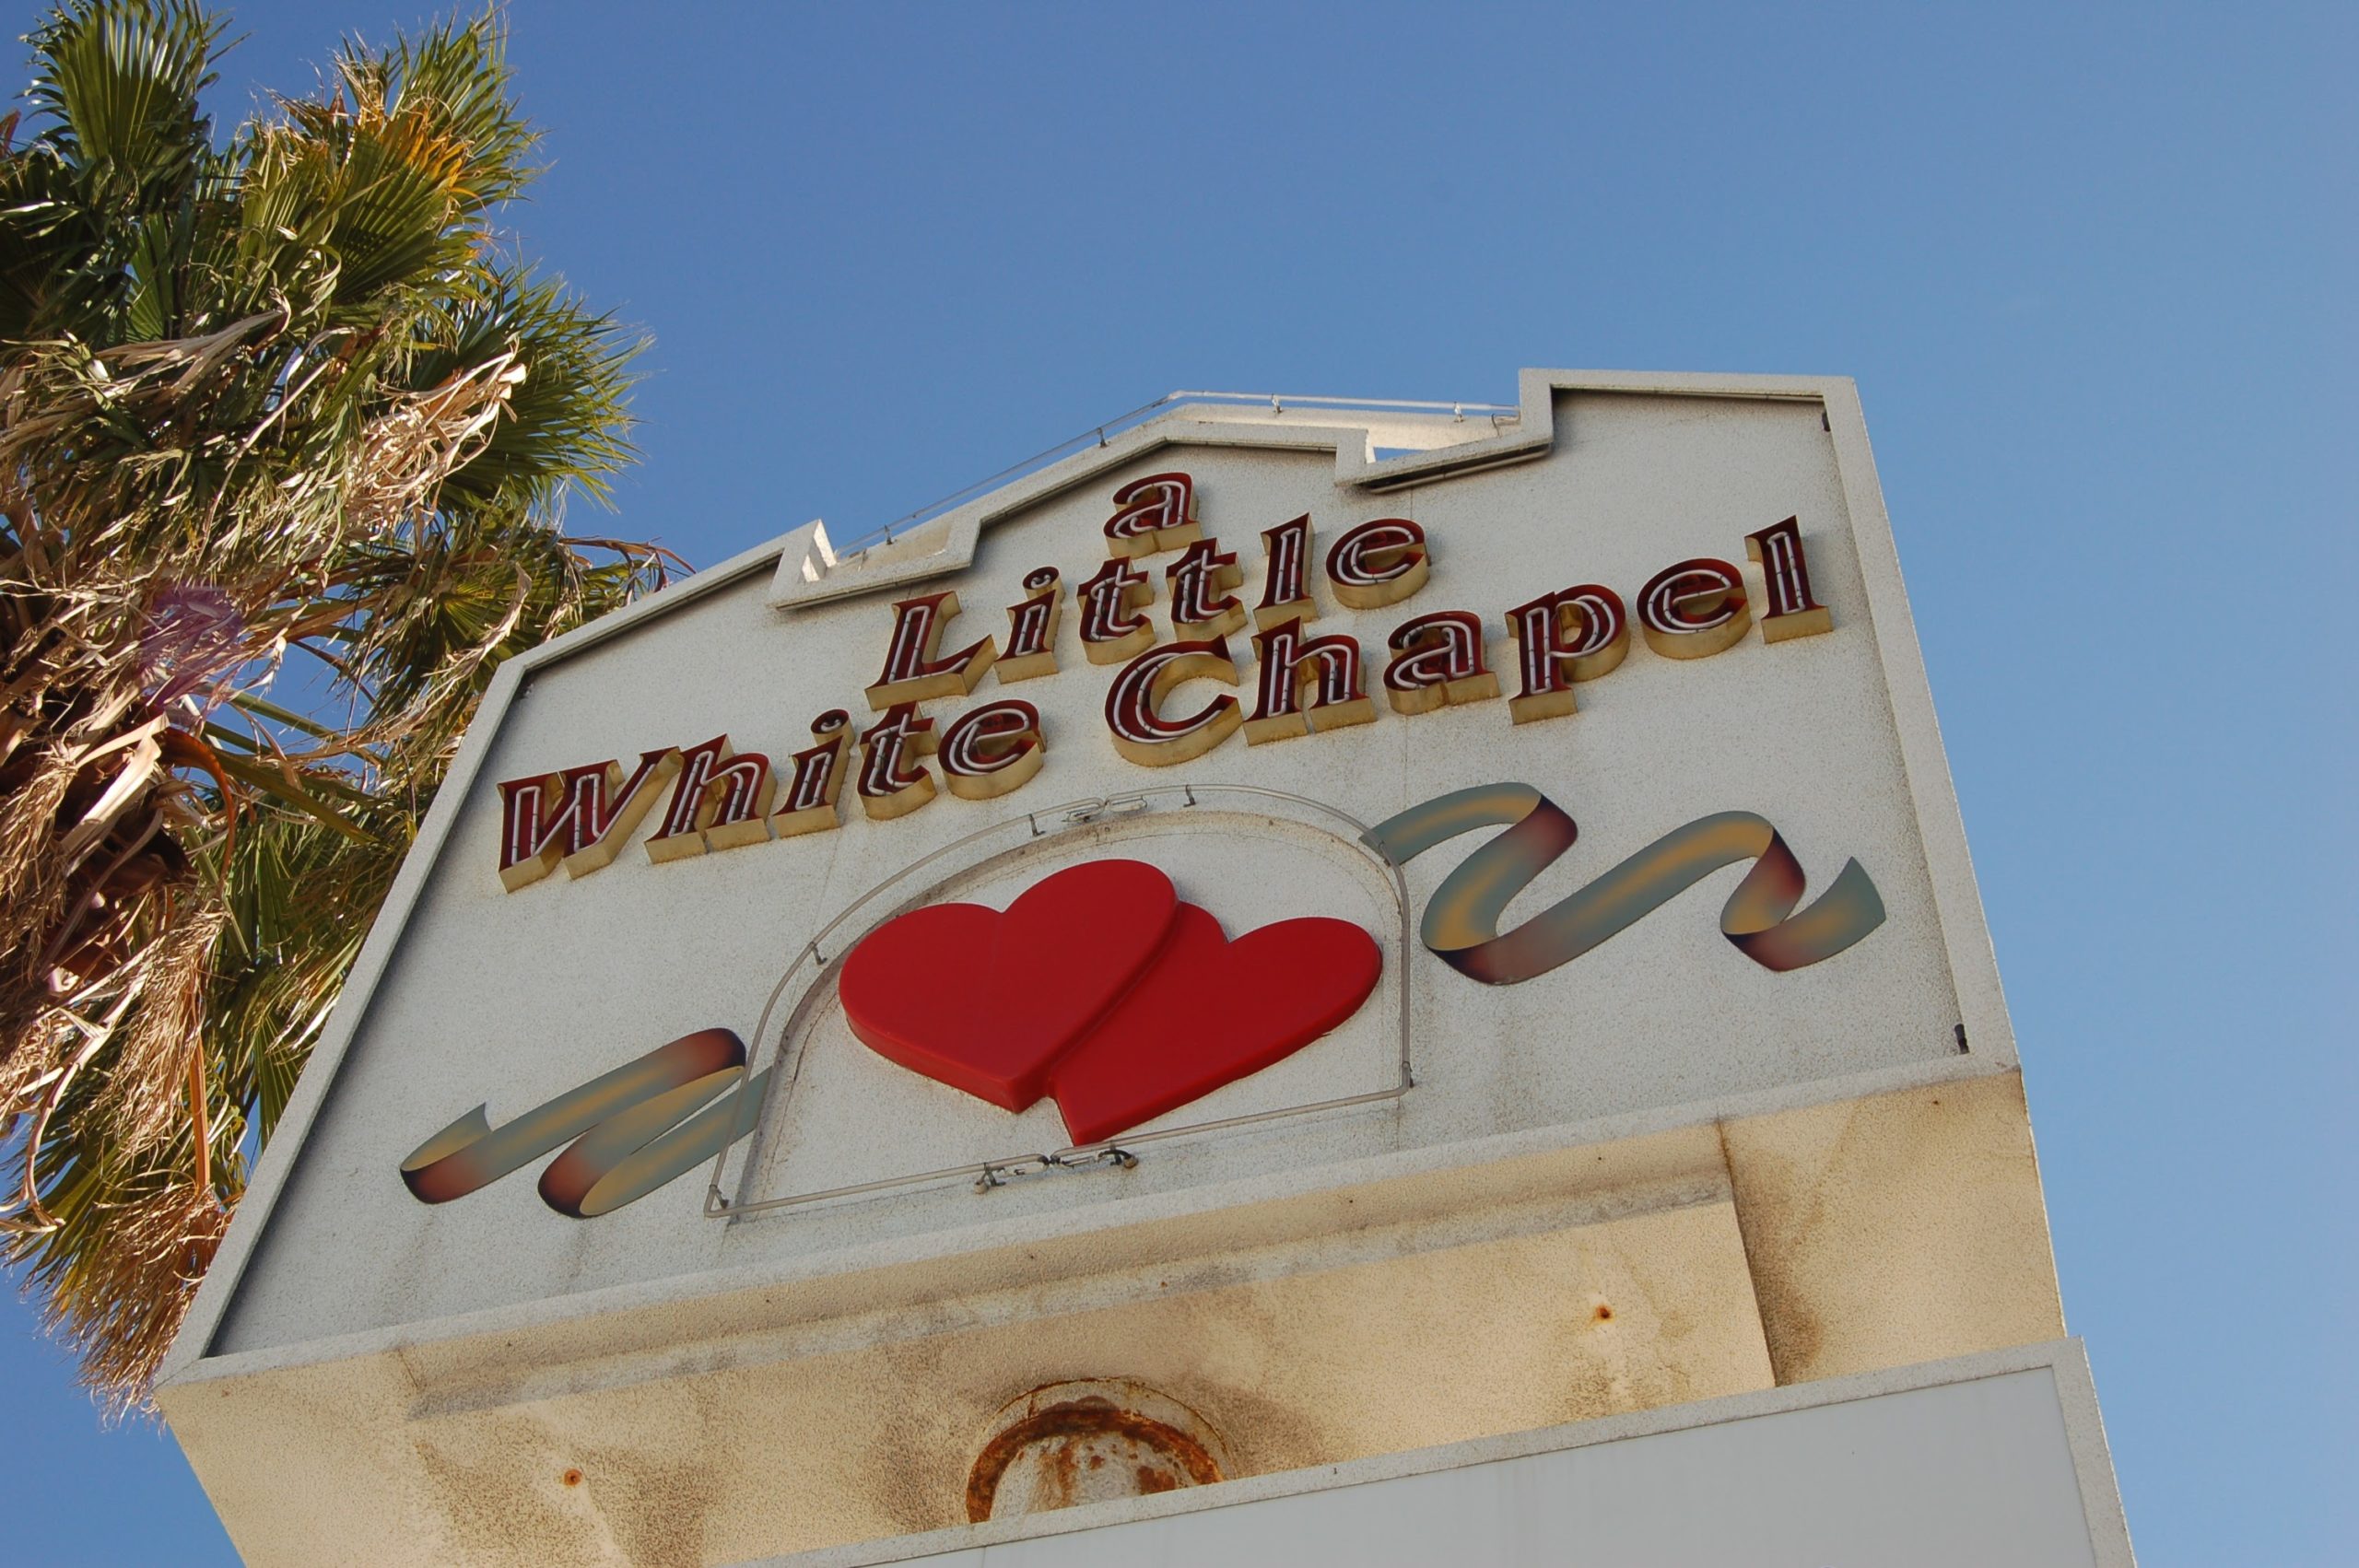 A Little White Chapel, Las Vegas